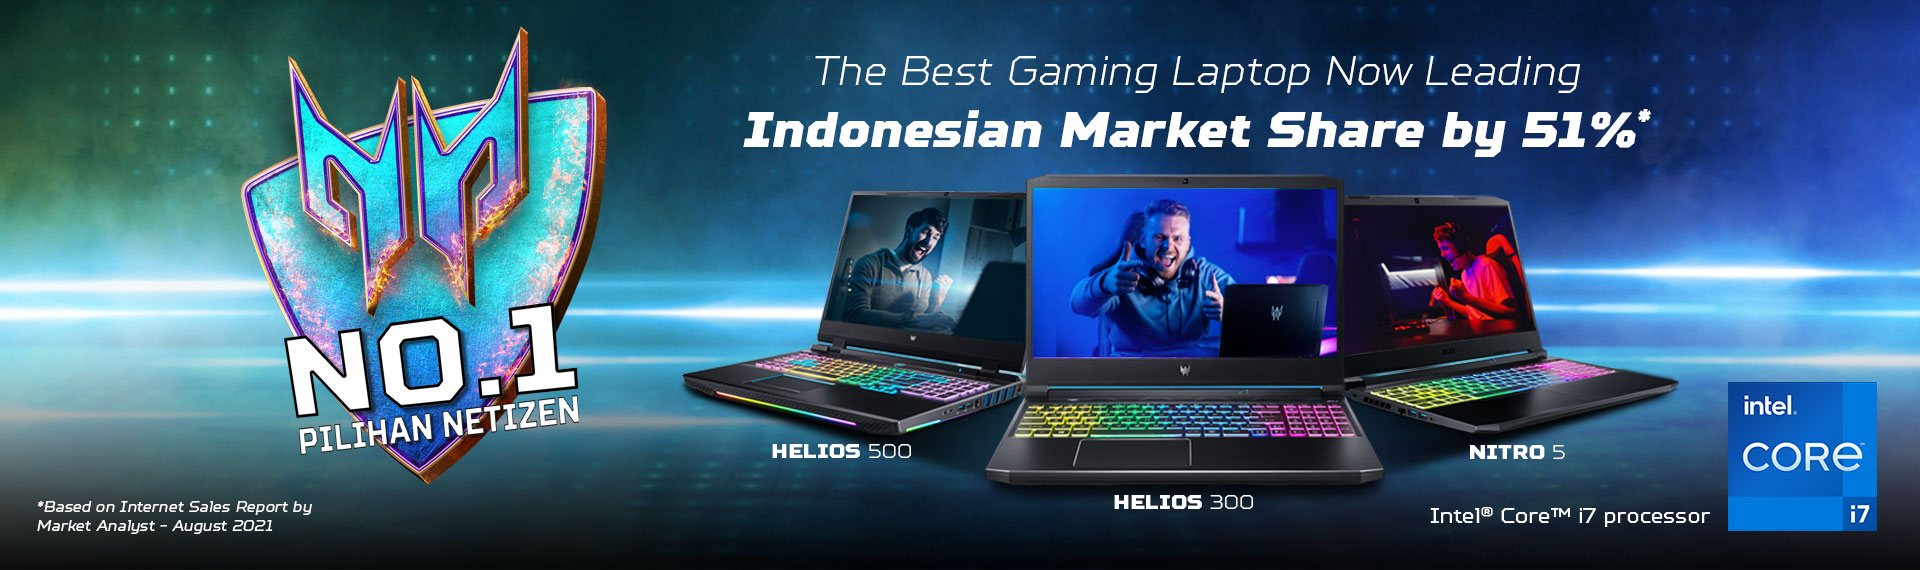 Predator Raih Predikat Merek Nomor Satu Laptop Gaming Pilihan Netizen Indonesia